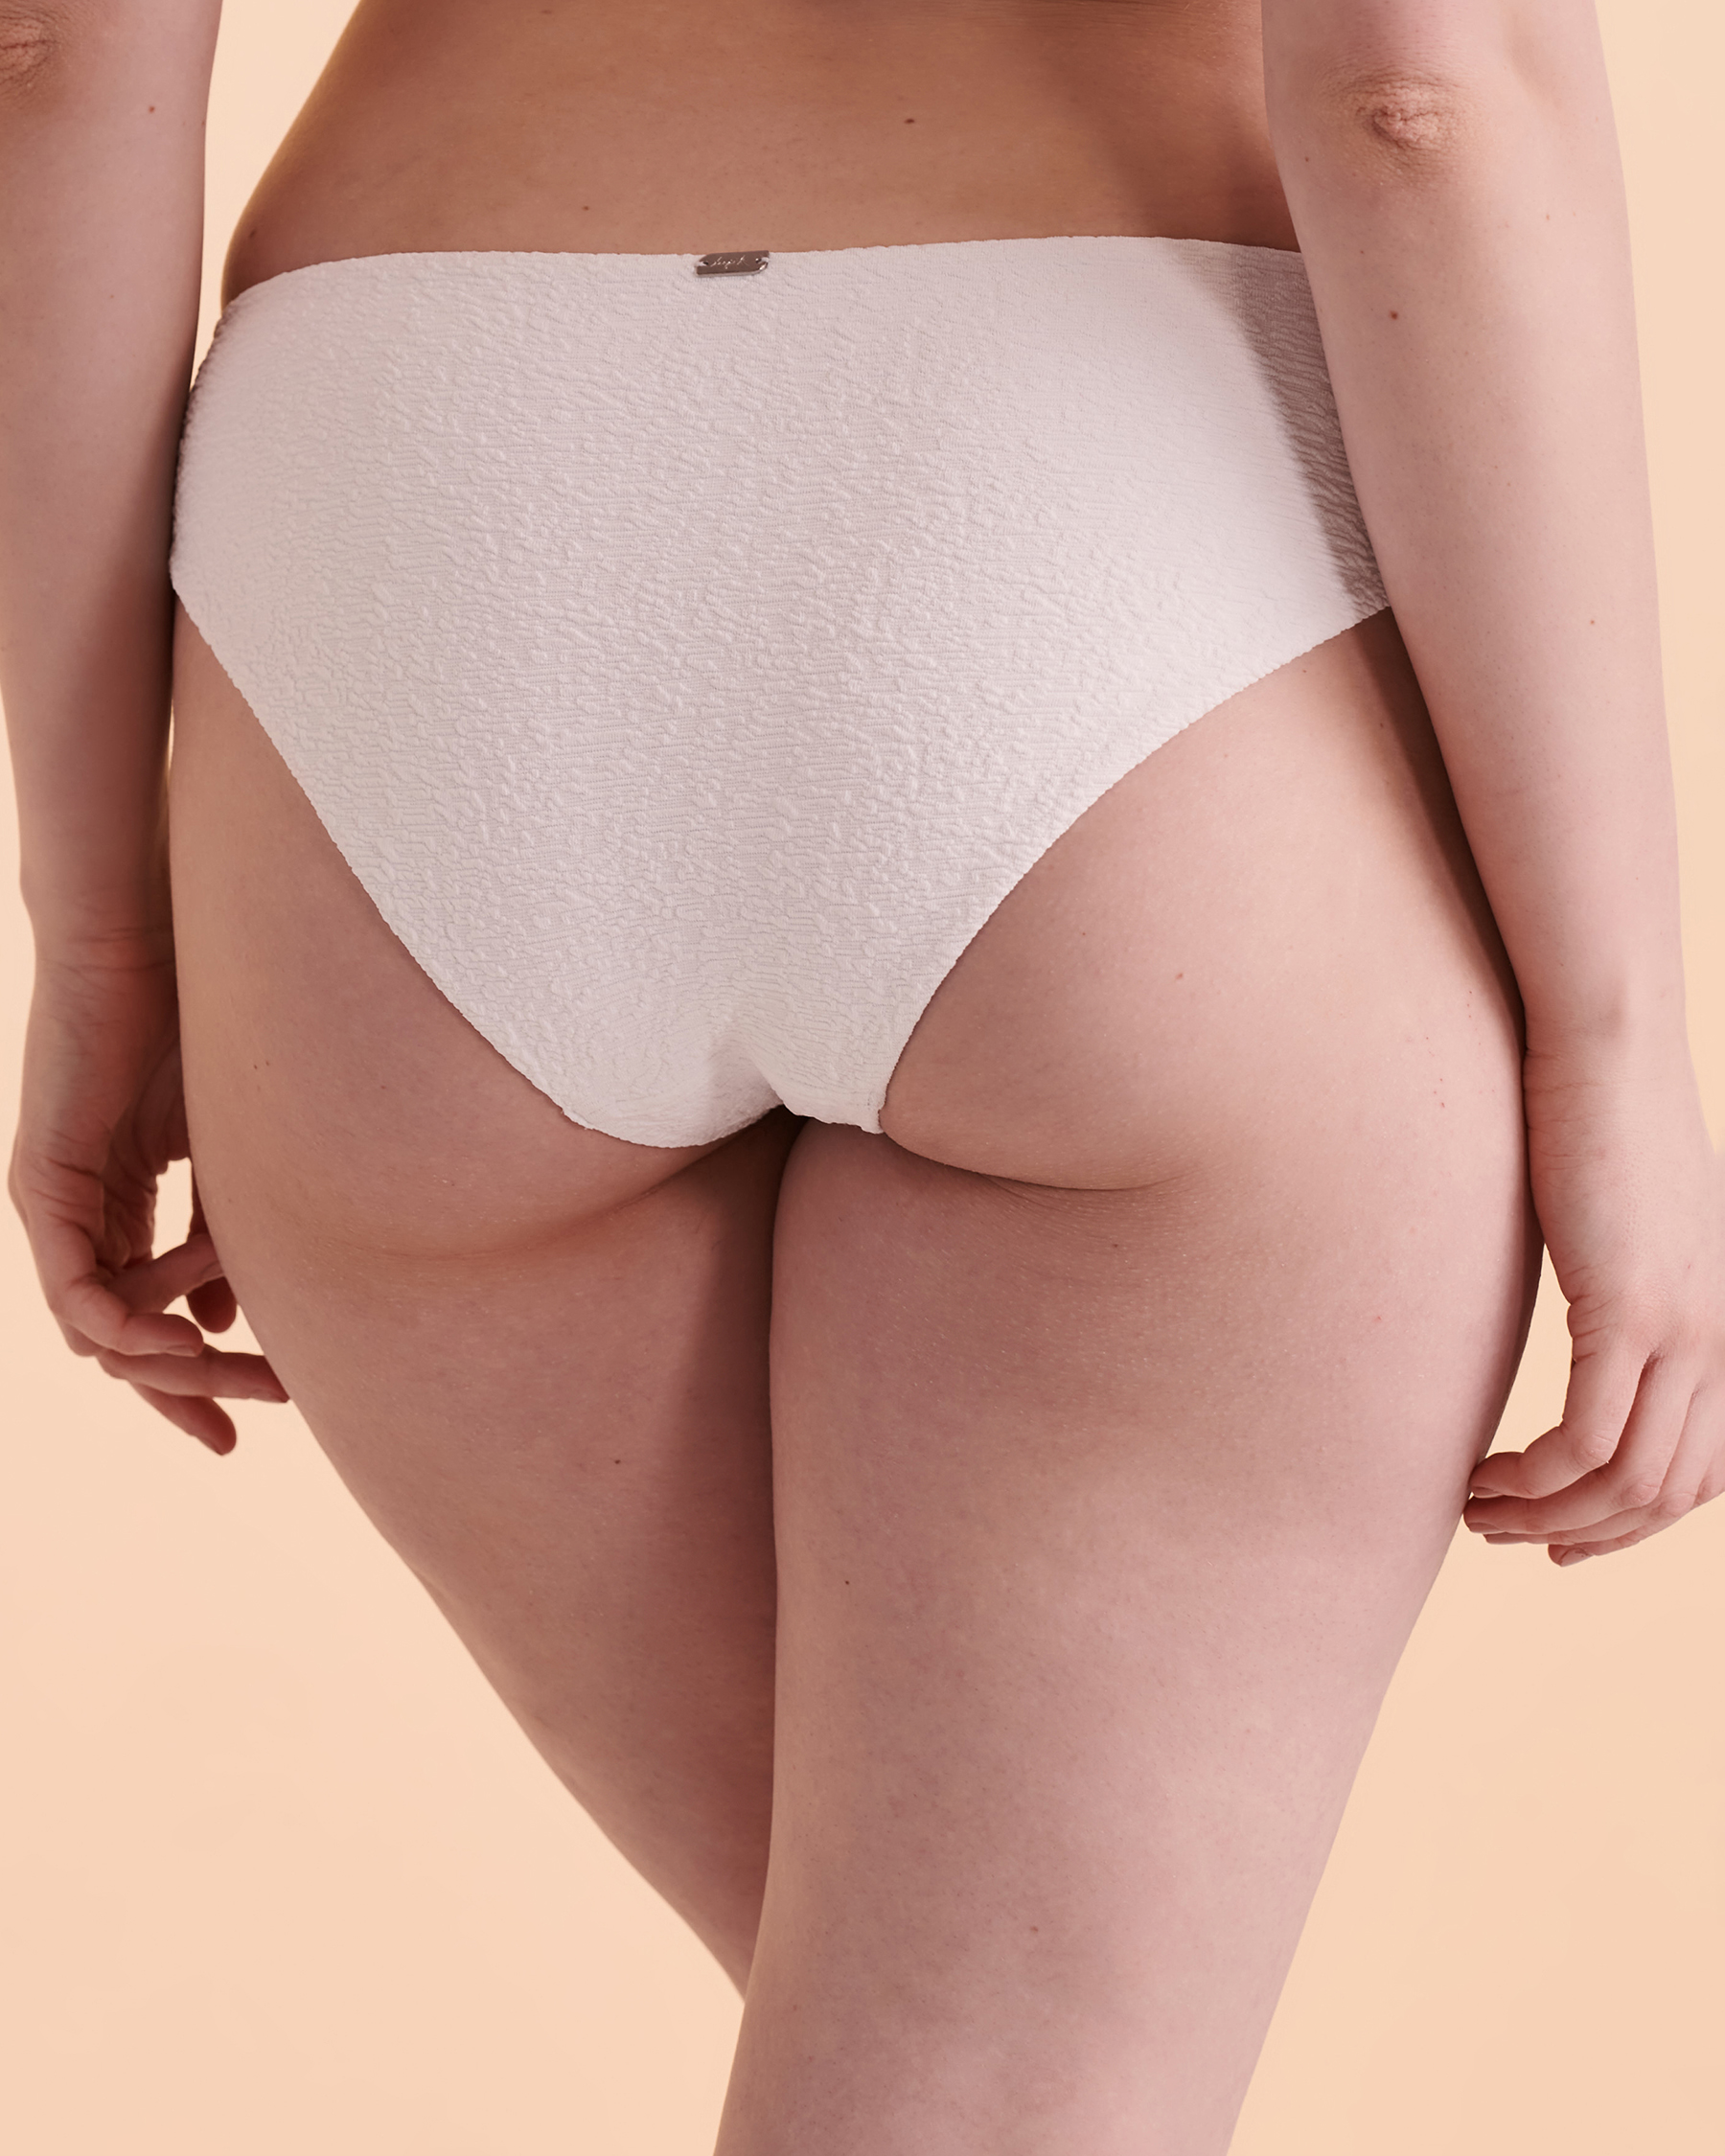 TROPIK TEXTURED Cheeky Bikini Bottom Brilliant white 01300094 - View2